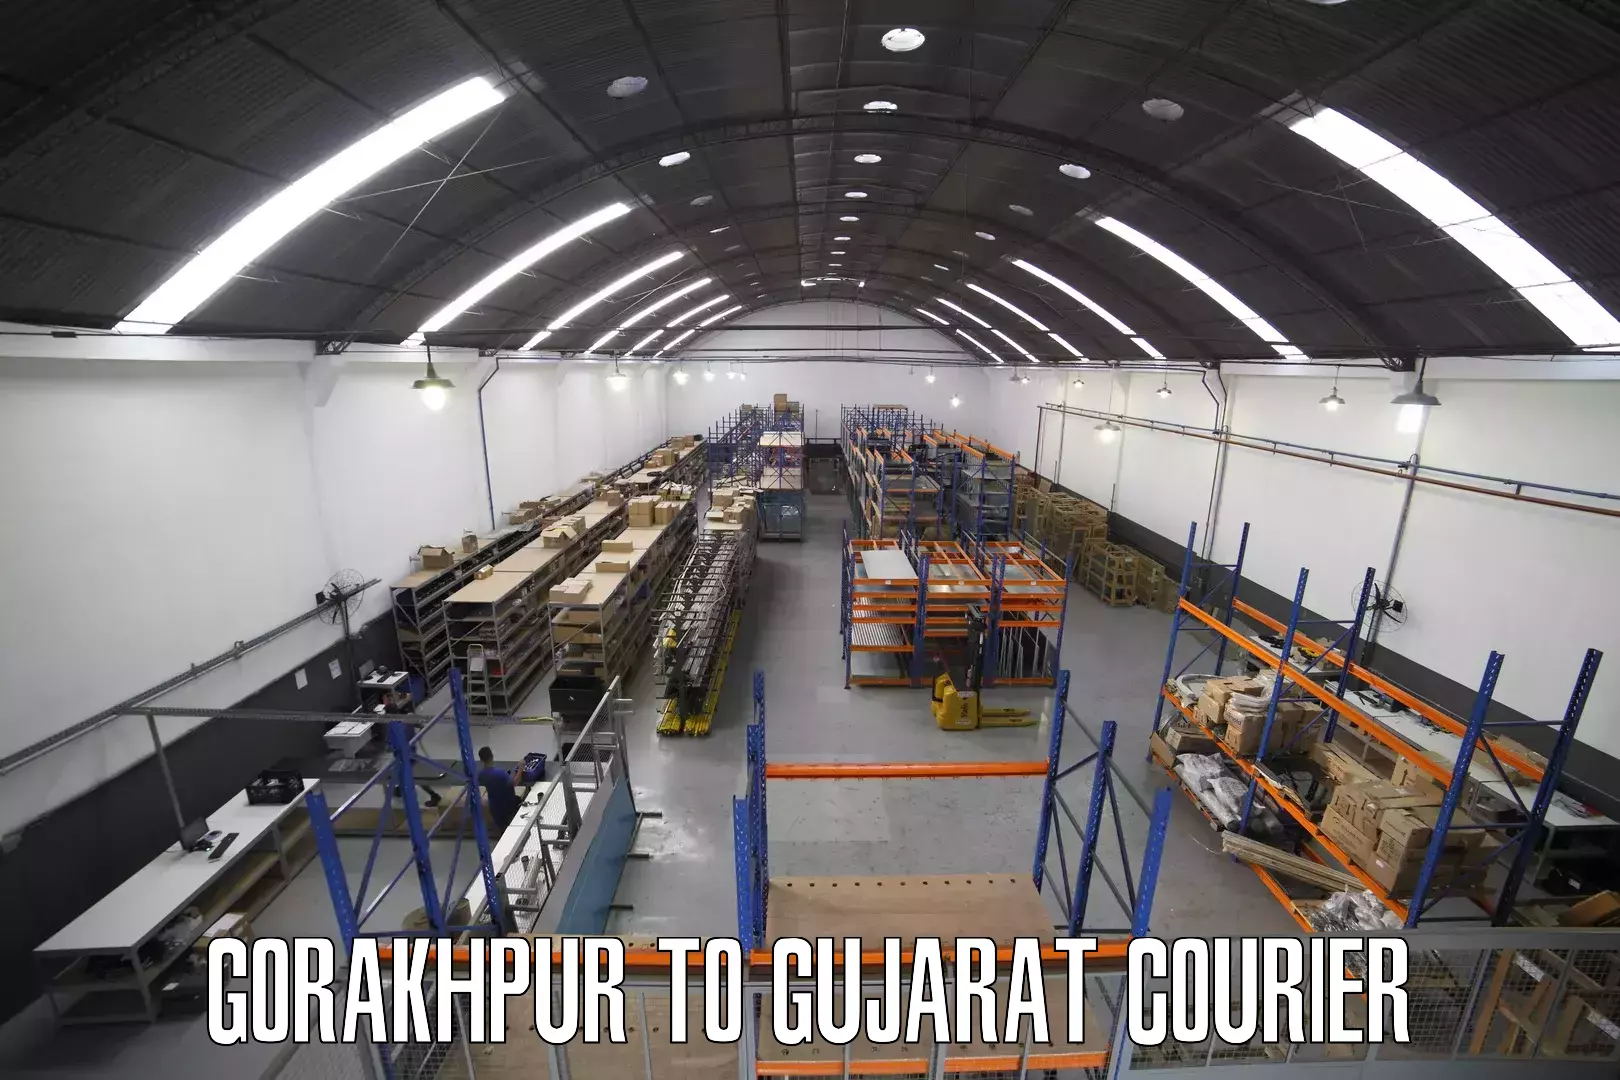 Global courier networks Gorakhpur to Bhabhar